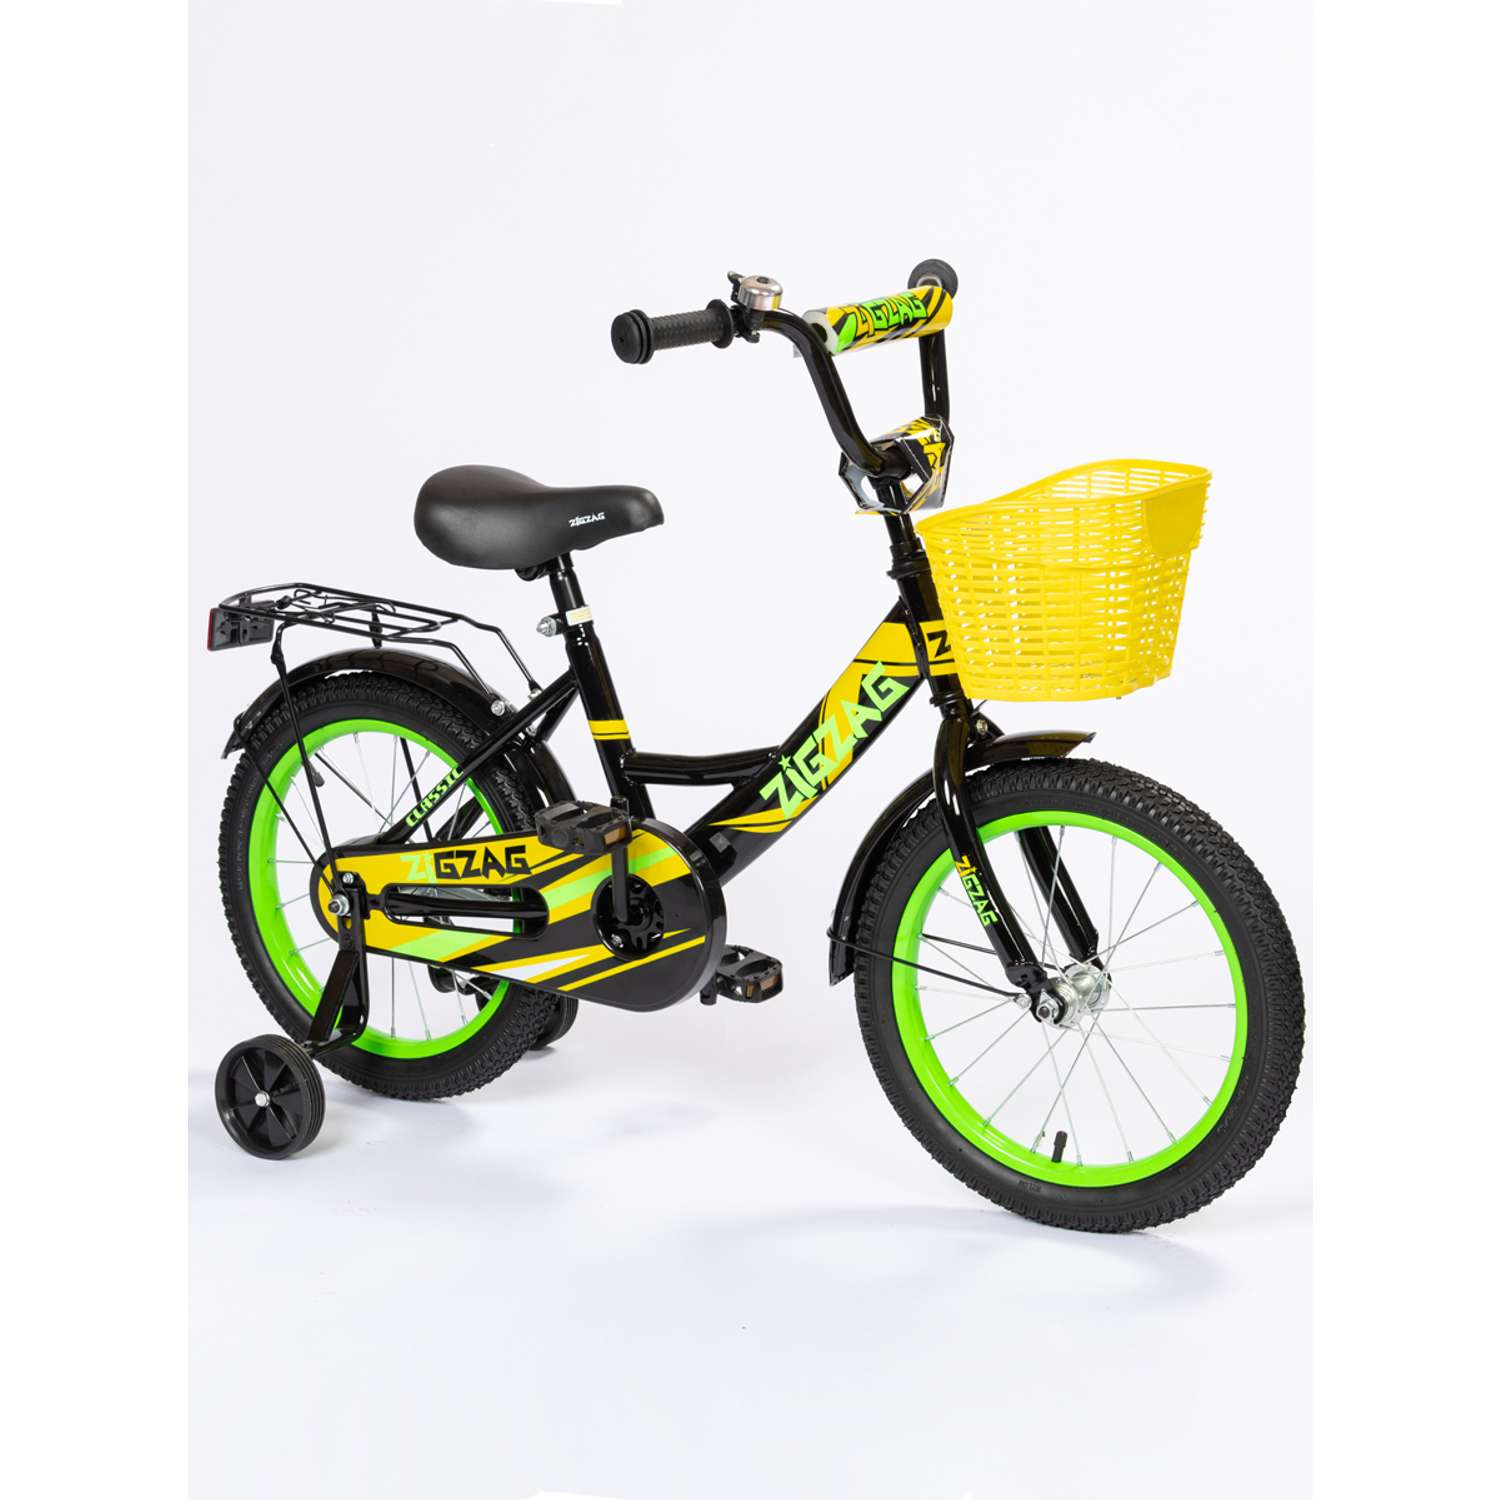 Велосипед ZigZag 14 CLASSIC черный желтый - фото 2